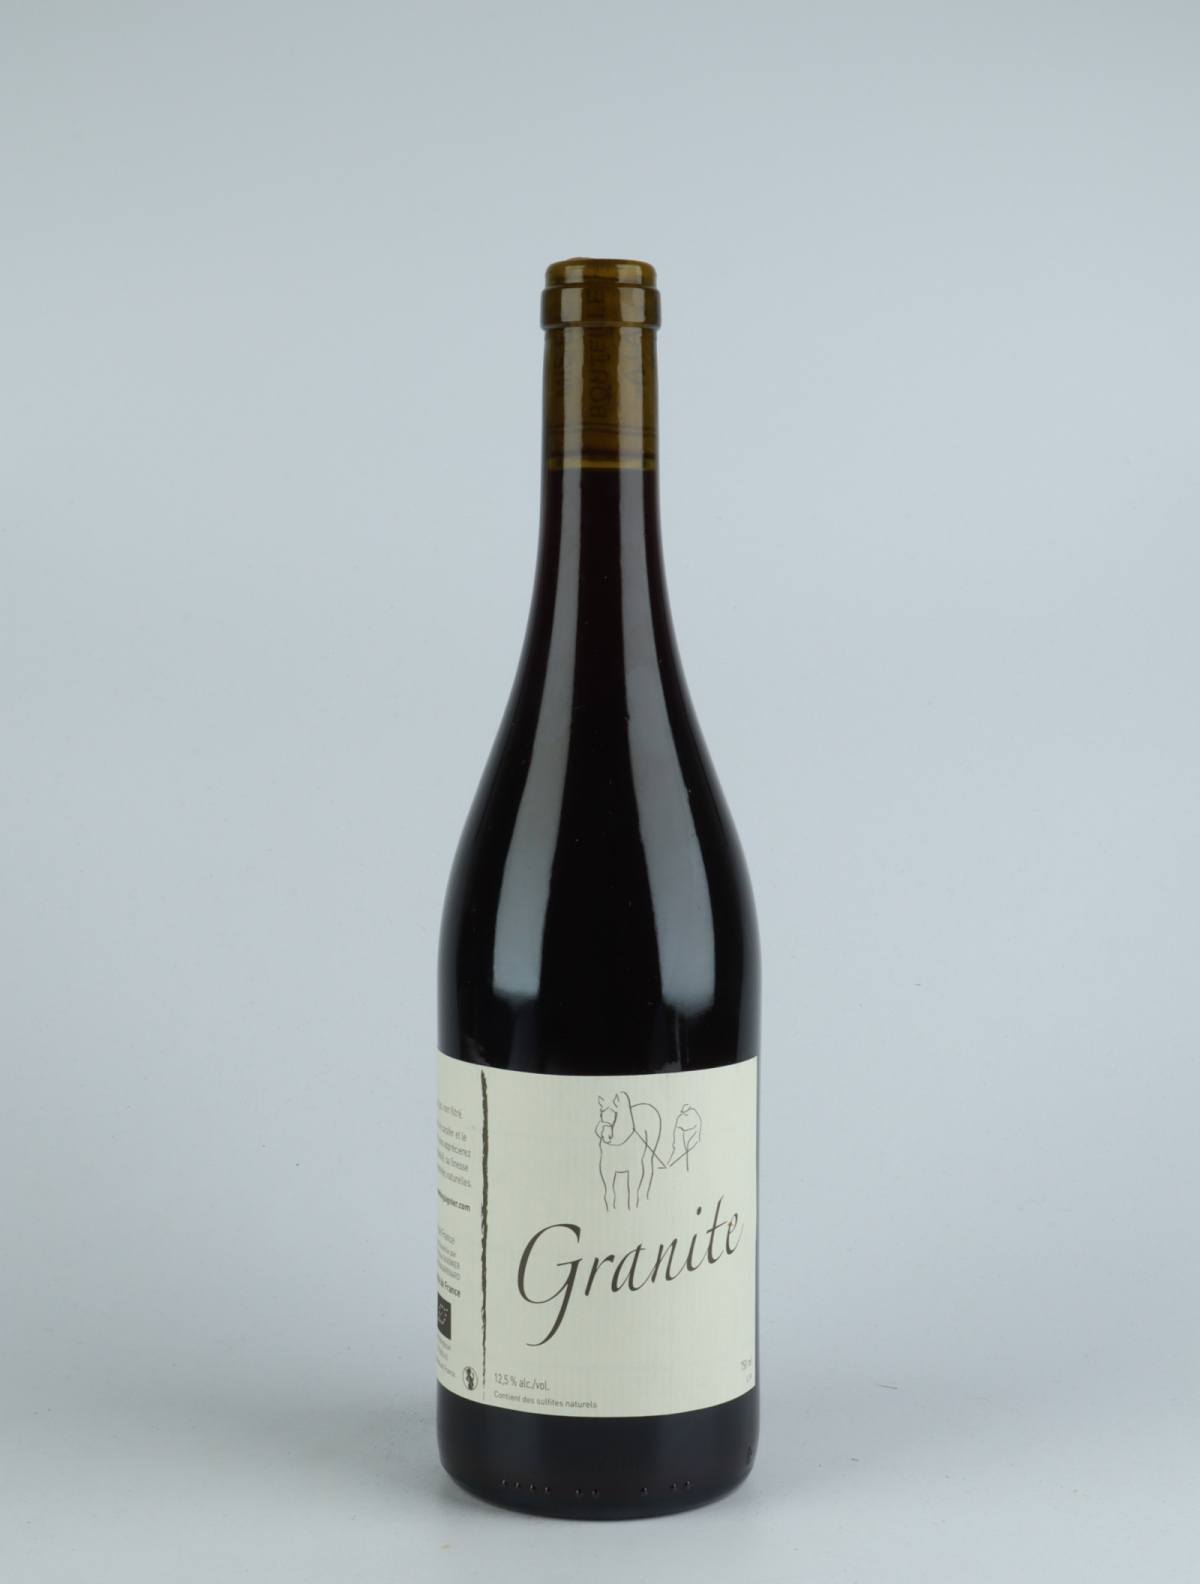 En flaske 2019 Granite Rødvin fra Michel Guignier, Beaujolais i Frankrig